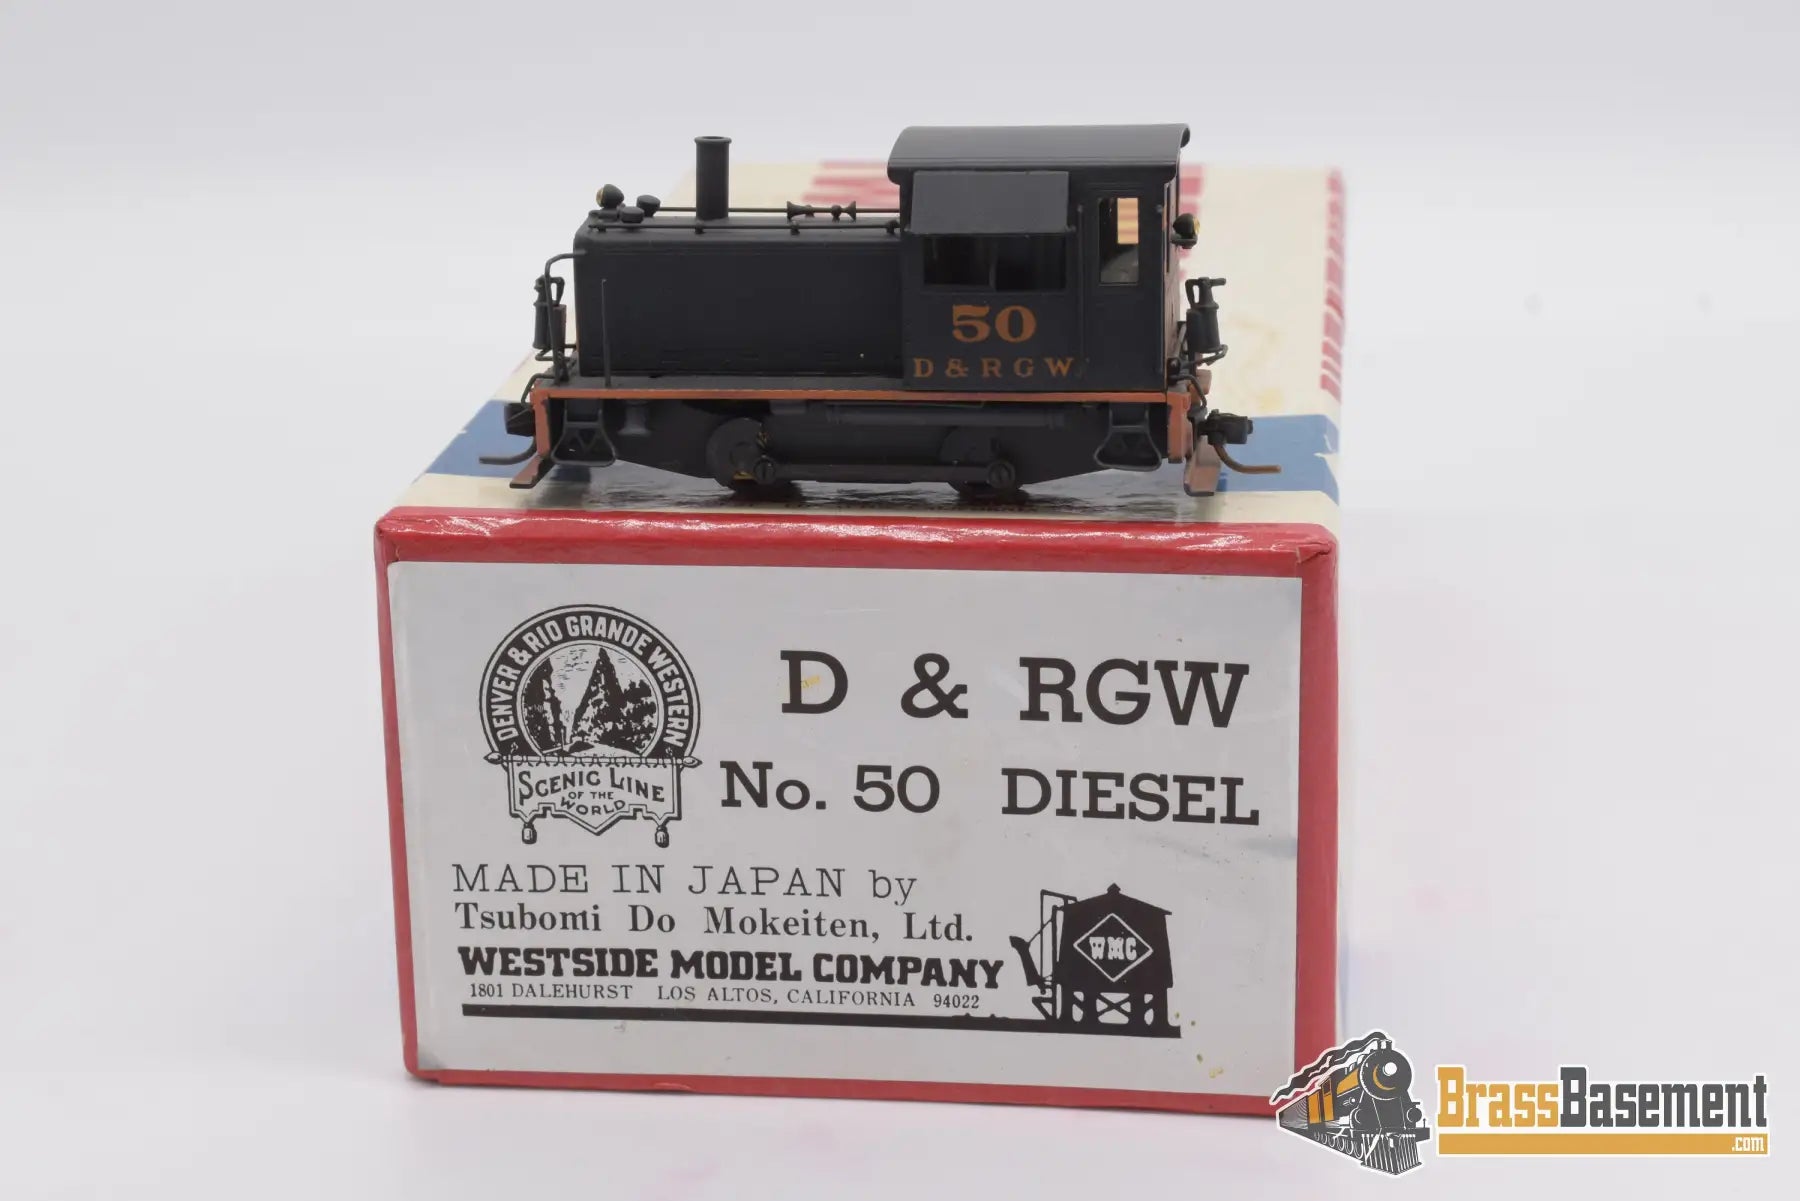 Hon3 Brass - Westside D&Rgw Rio Grande #50 Diesel Nice Paint